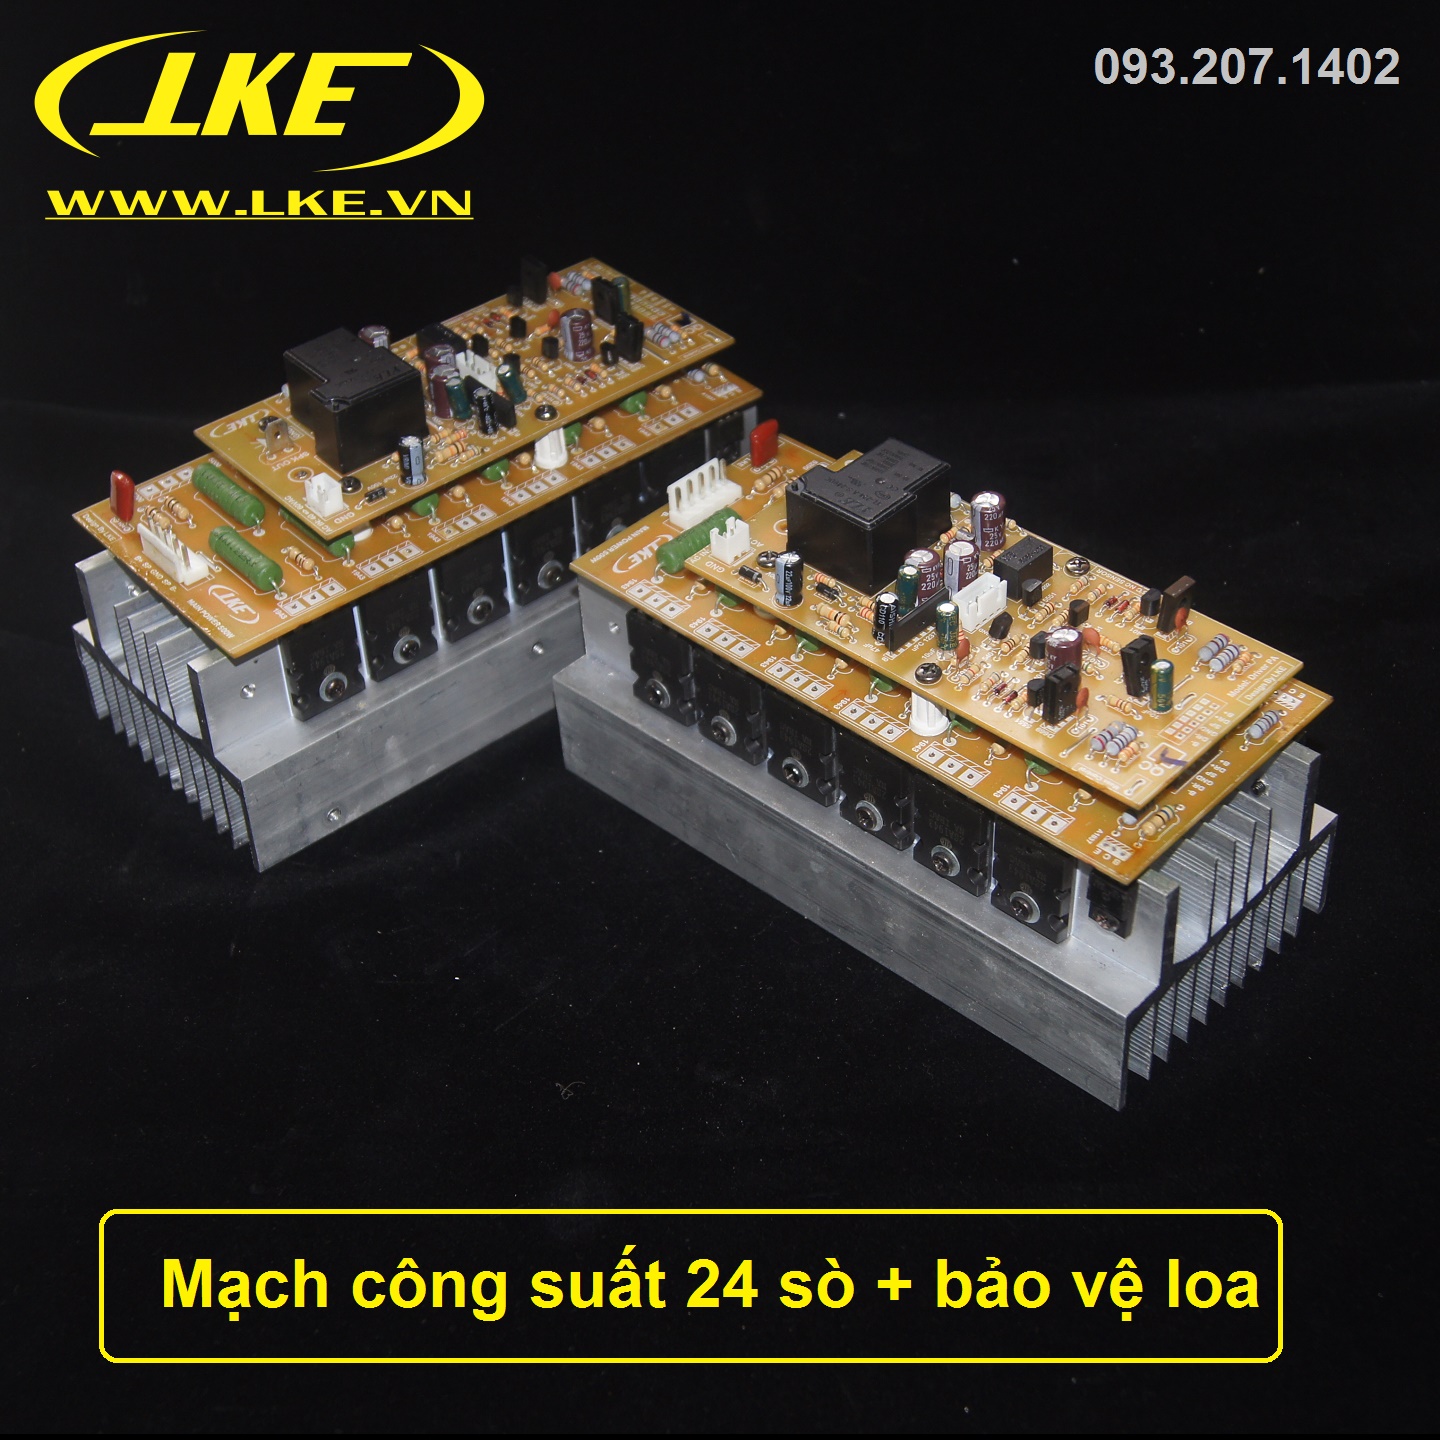 mạch công suất 24 sò nhôm 2U LKE công suất 550W tích hợp bảo vệ loa